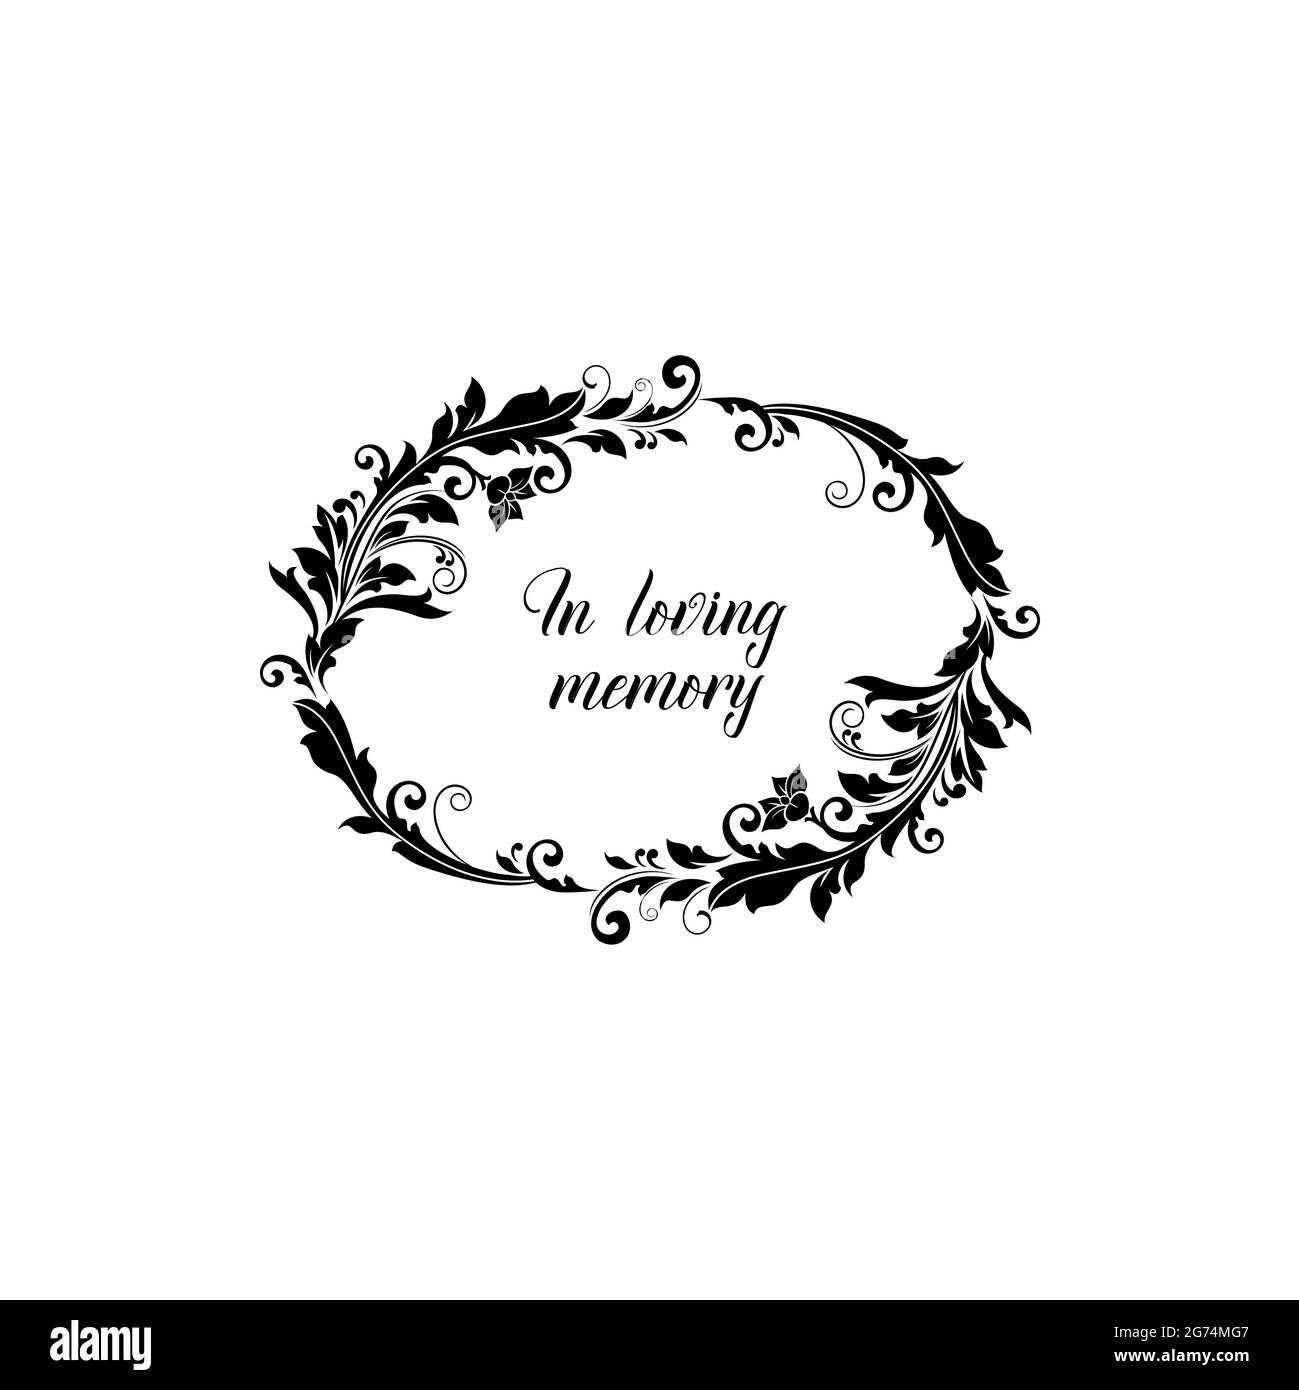 Carte mémoire funéraire de condoléances et d'amour avec fleur, couronne de fleurs noires, vecteur. En mémoire aimante funérailles souvenir bannière cadre, nécrologie Illustration de Vecteur